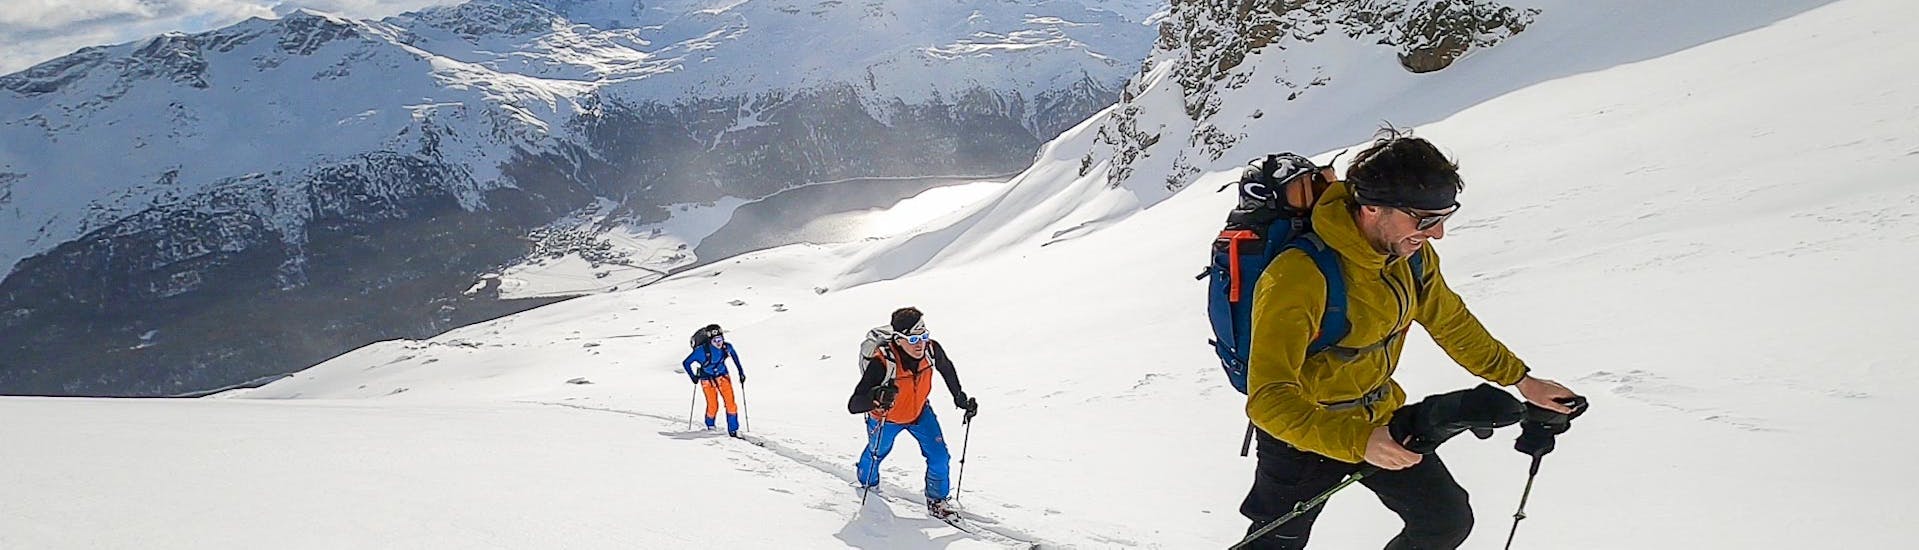 Cours particulier de ski freeride - Avancé avec Skischule PassionSki - St. Moritz.